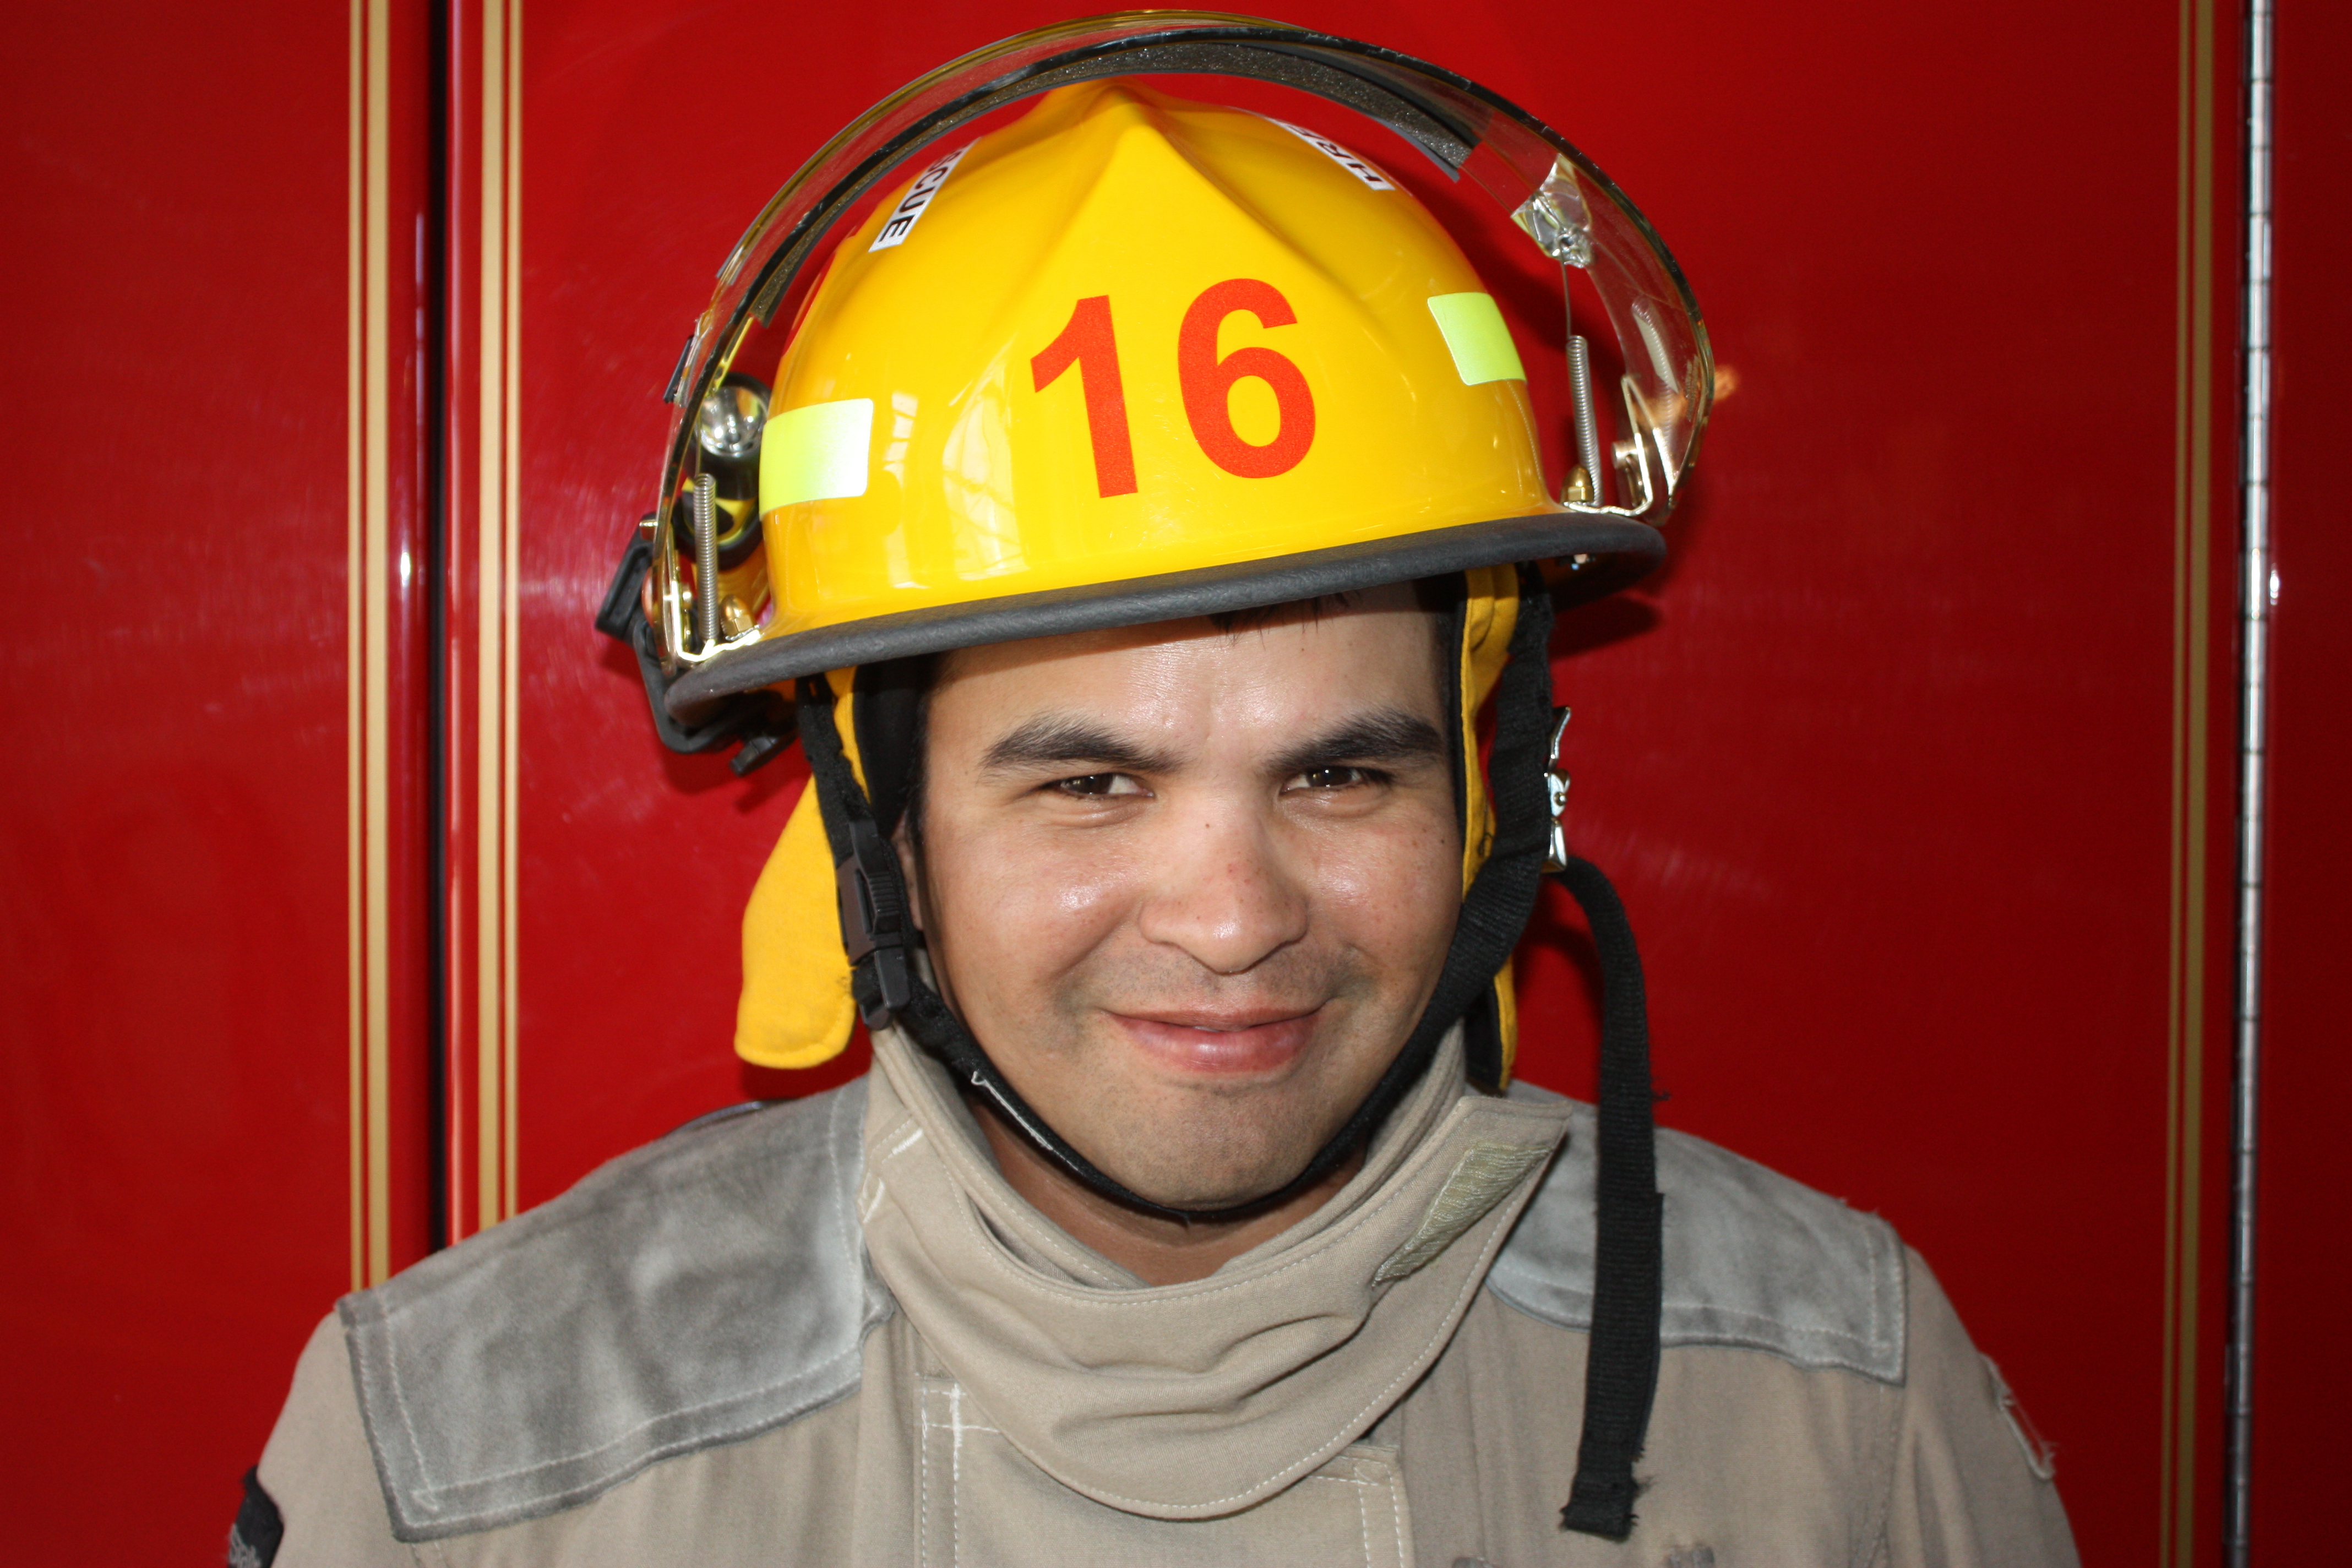 Firefighter 16